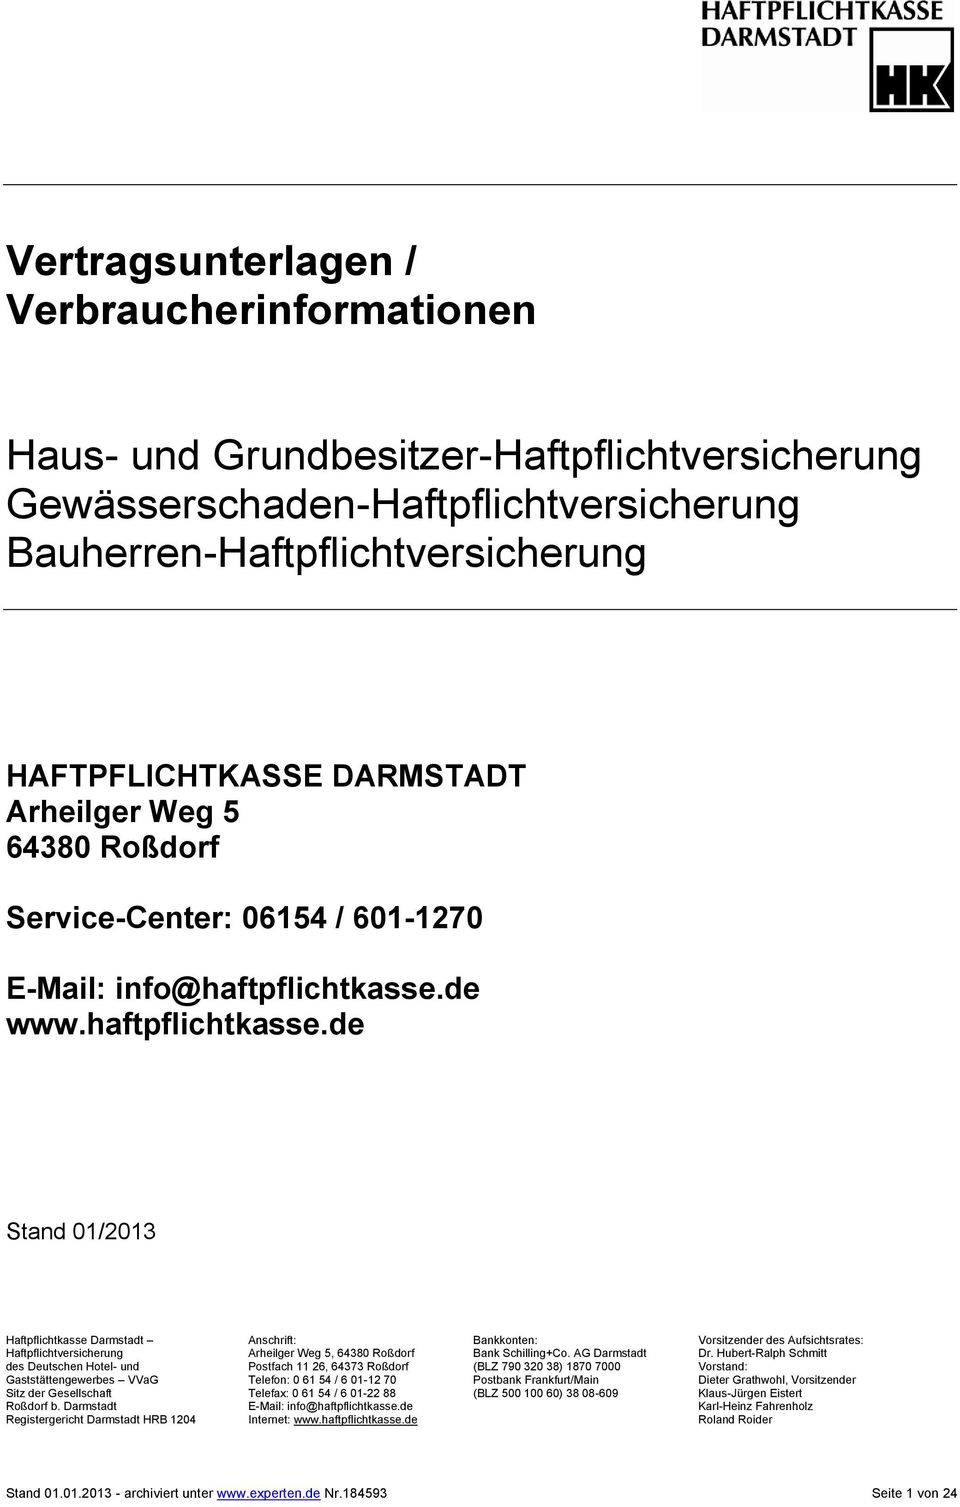 de www.haftpflichtkasse.de Stand 01/2013 Haftpflichtkasse Darmstadt Anschrift: Bankkonten: Vorsitzender des Aufsichtsrates: Haftpflichtversicherung Arheilger Weg 5, 64380 Roßdorf Bank Schilling+Co.